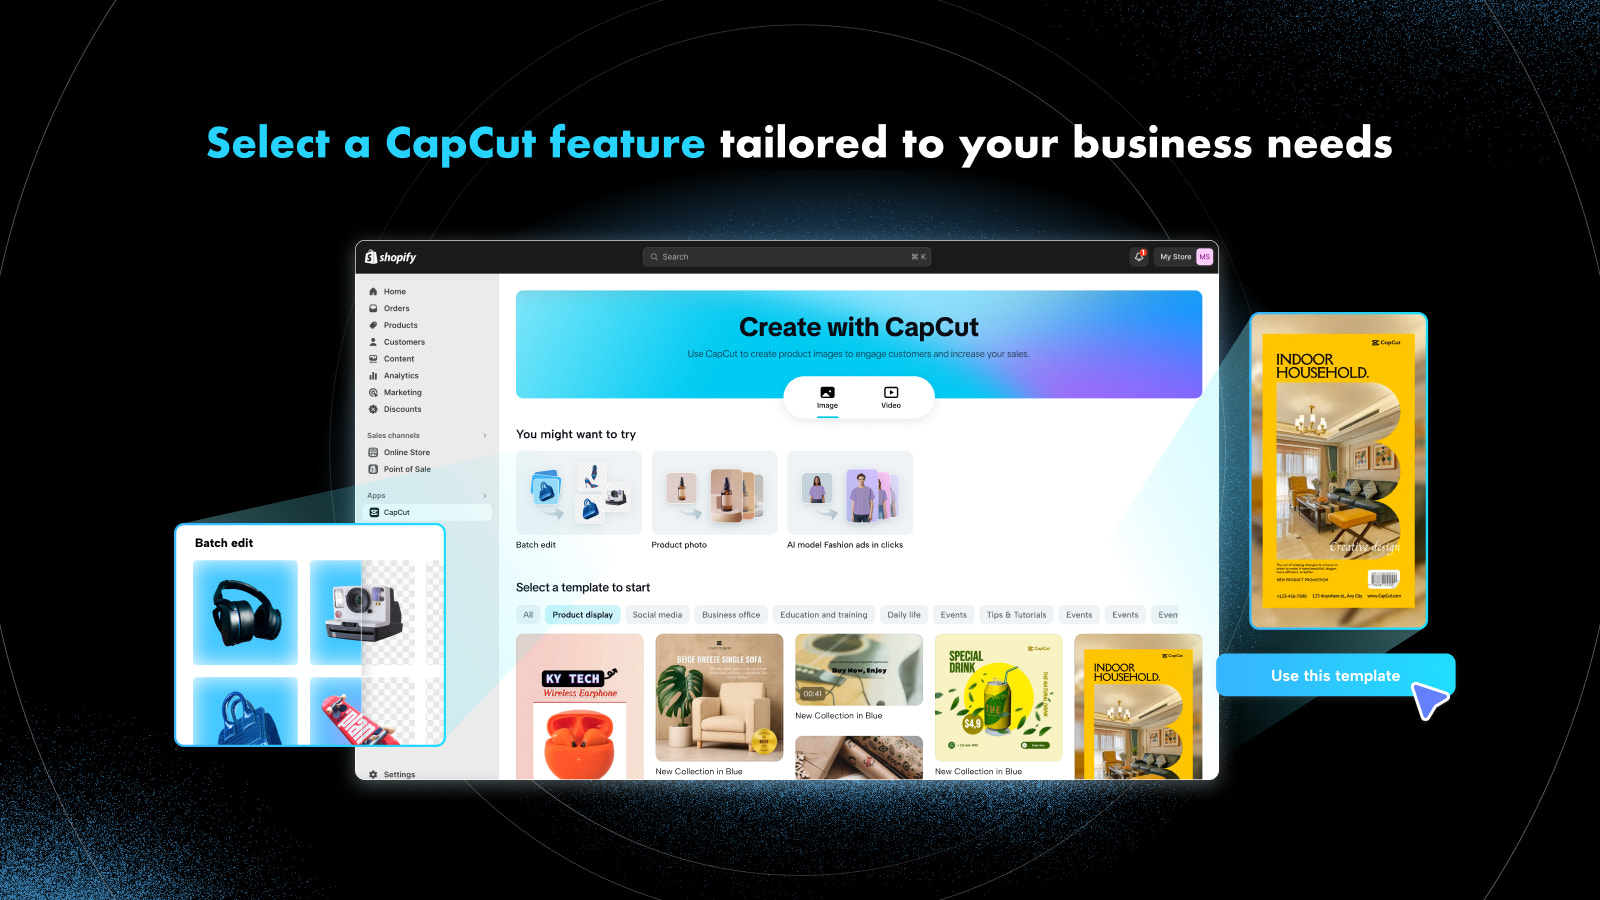 Pick a CapCut feature